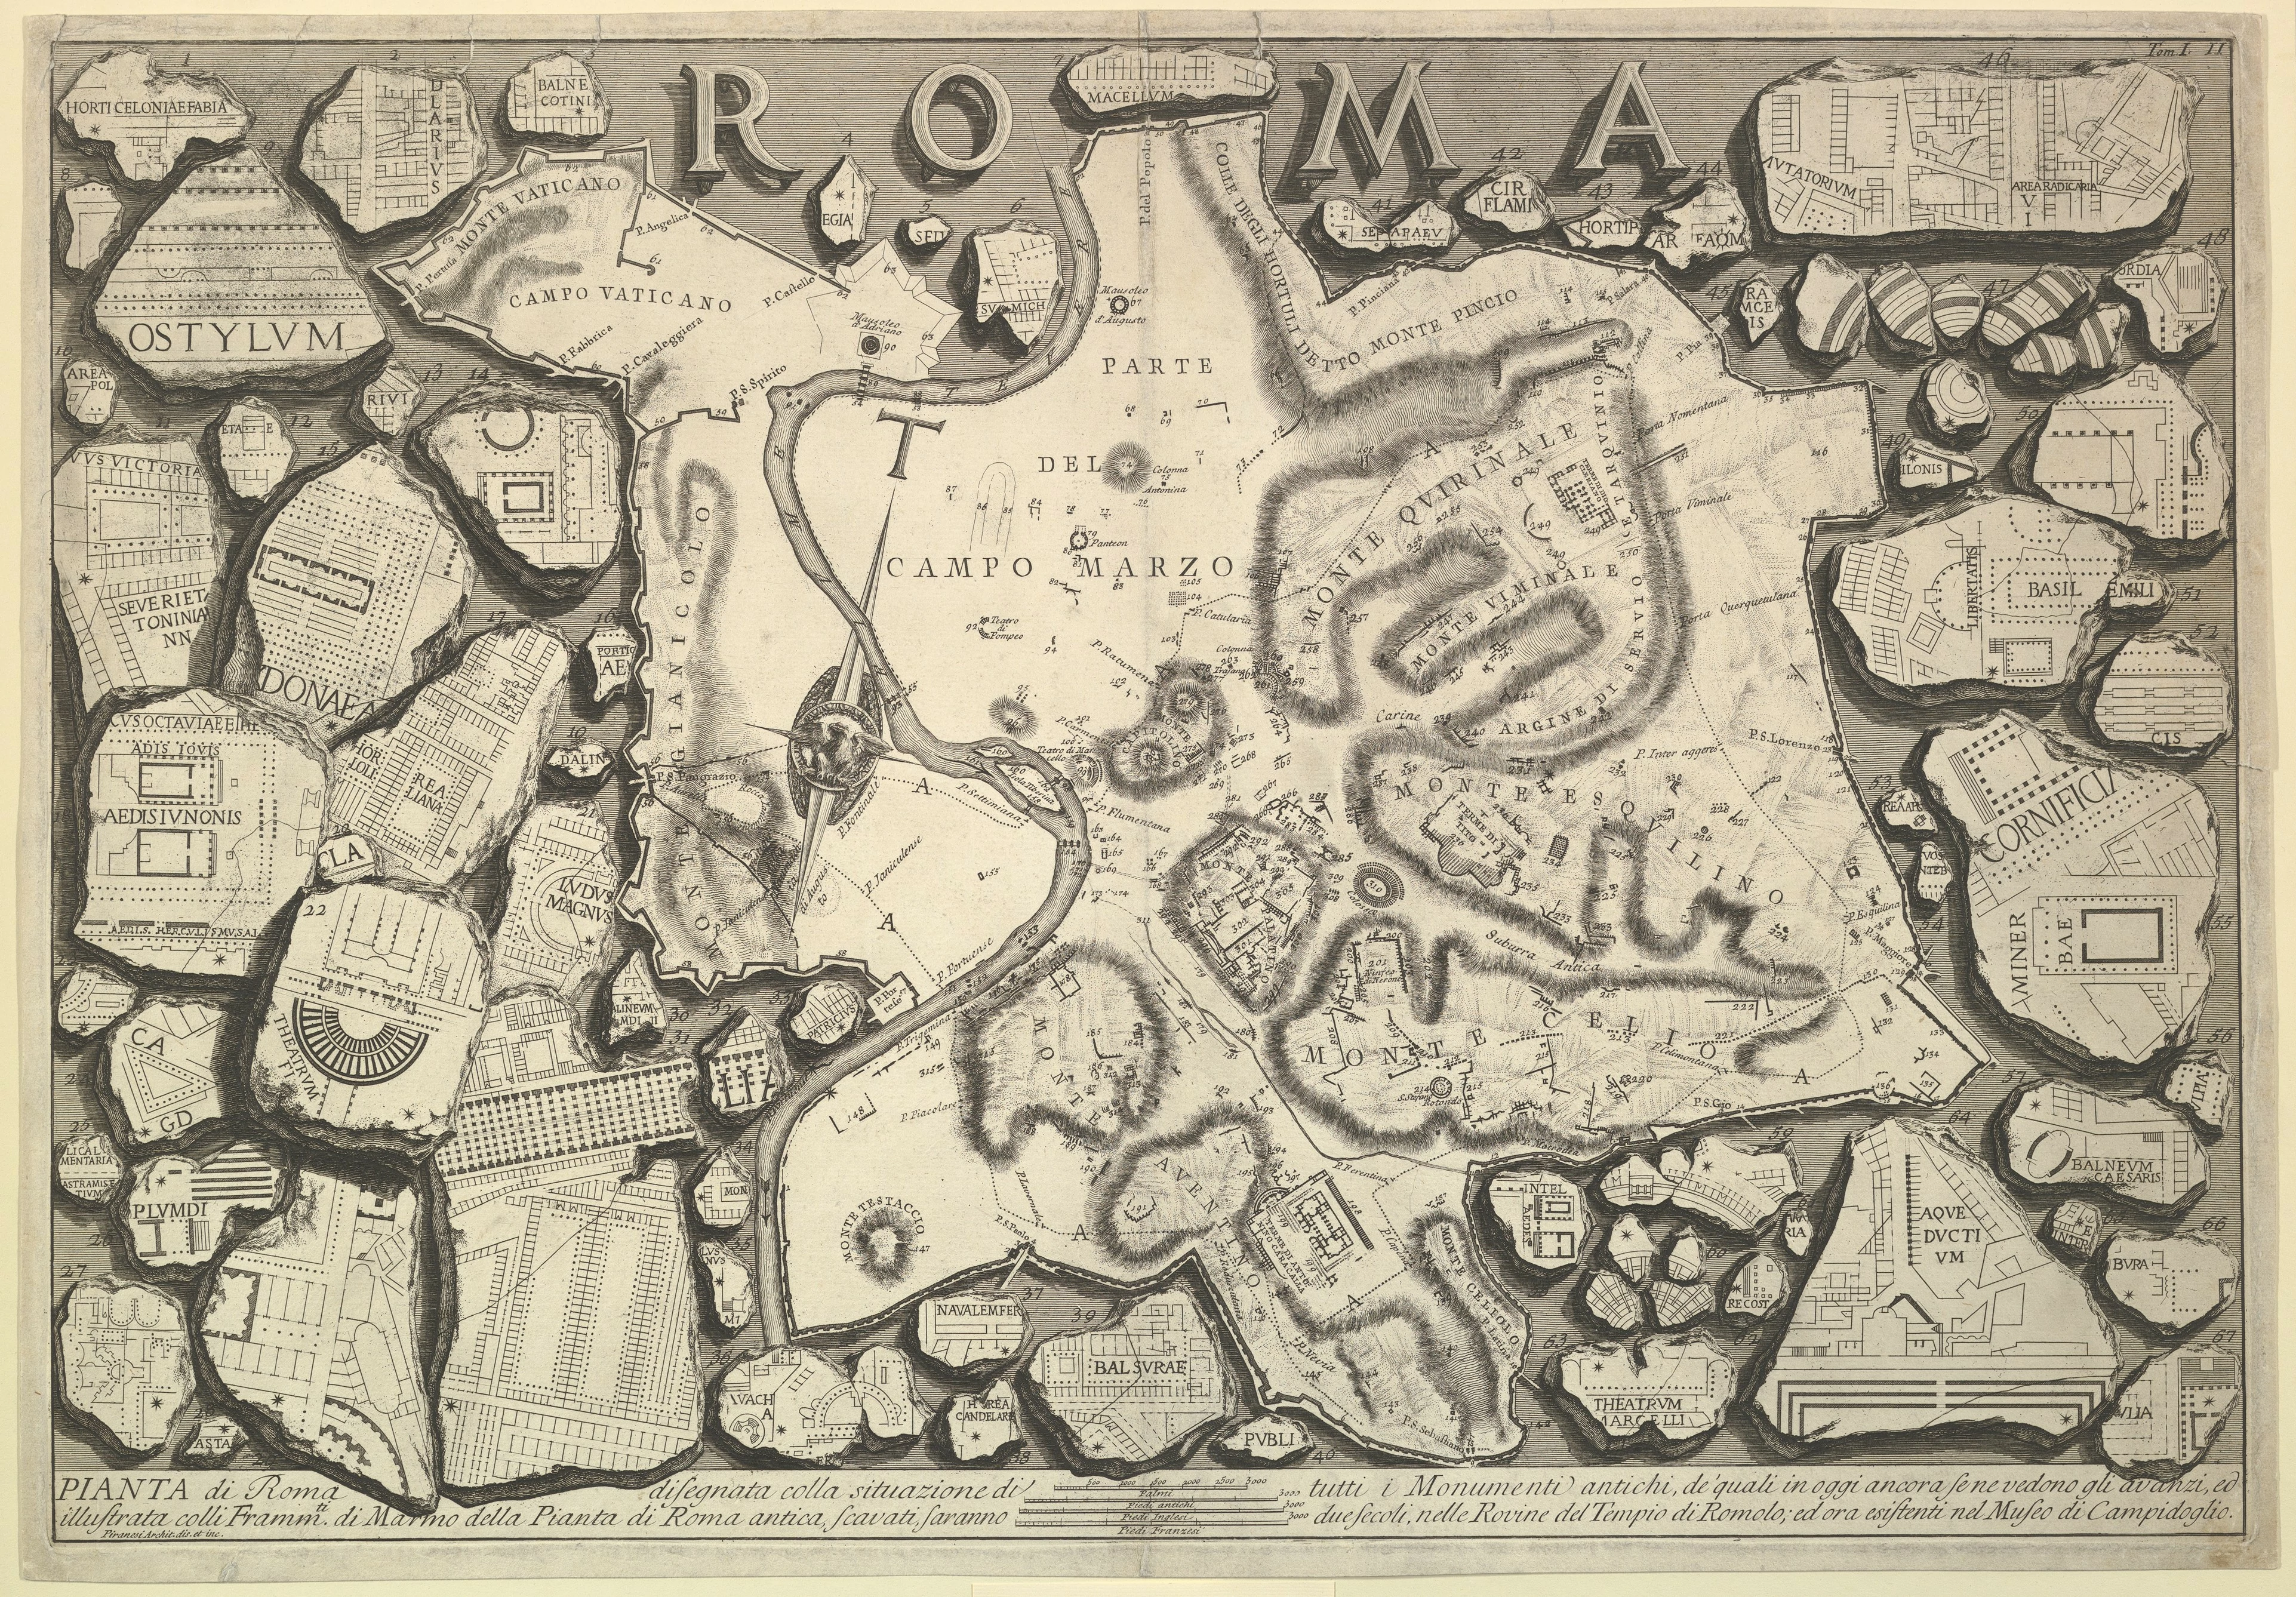 Plan of Rome, from Le Antichità Romane, Giovanni Battista Piranesi